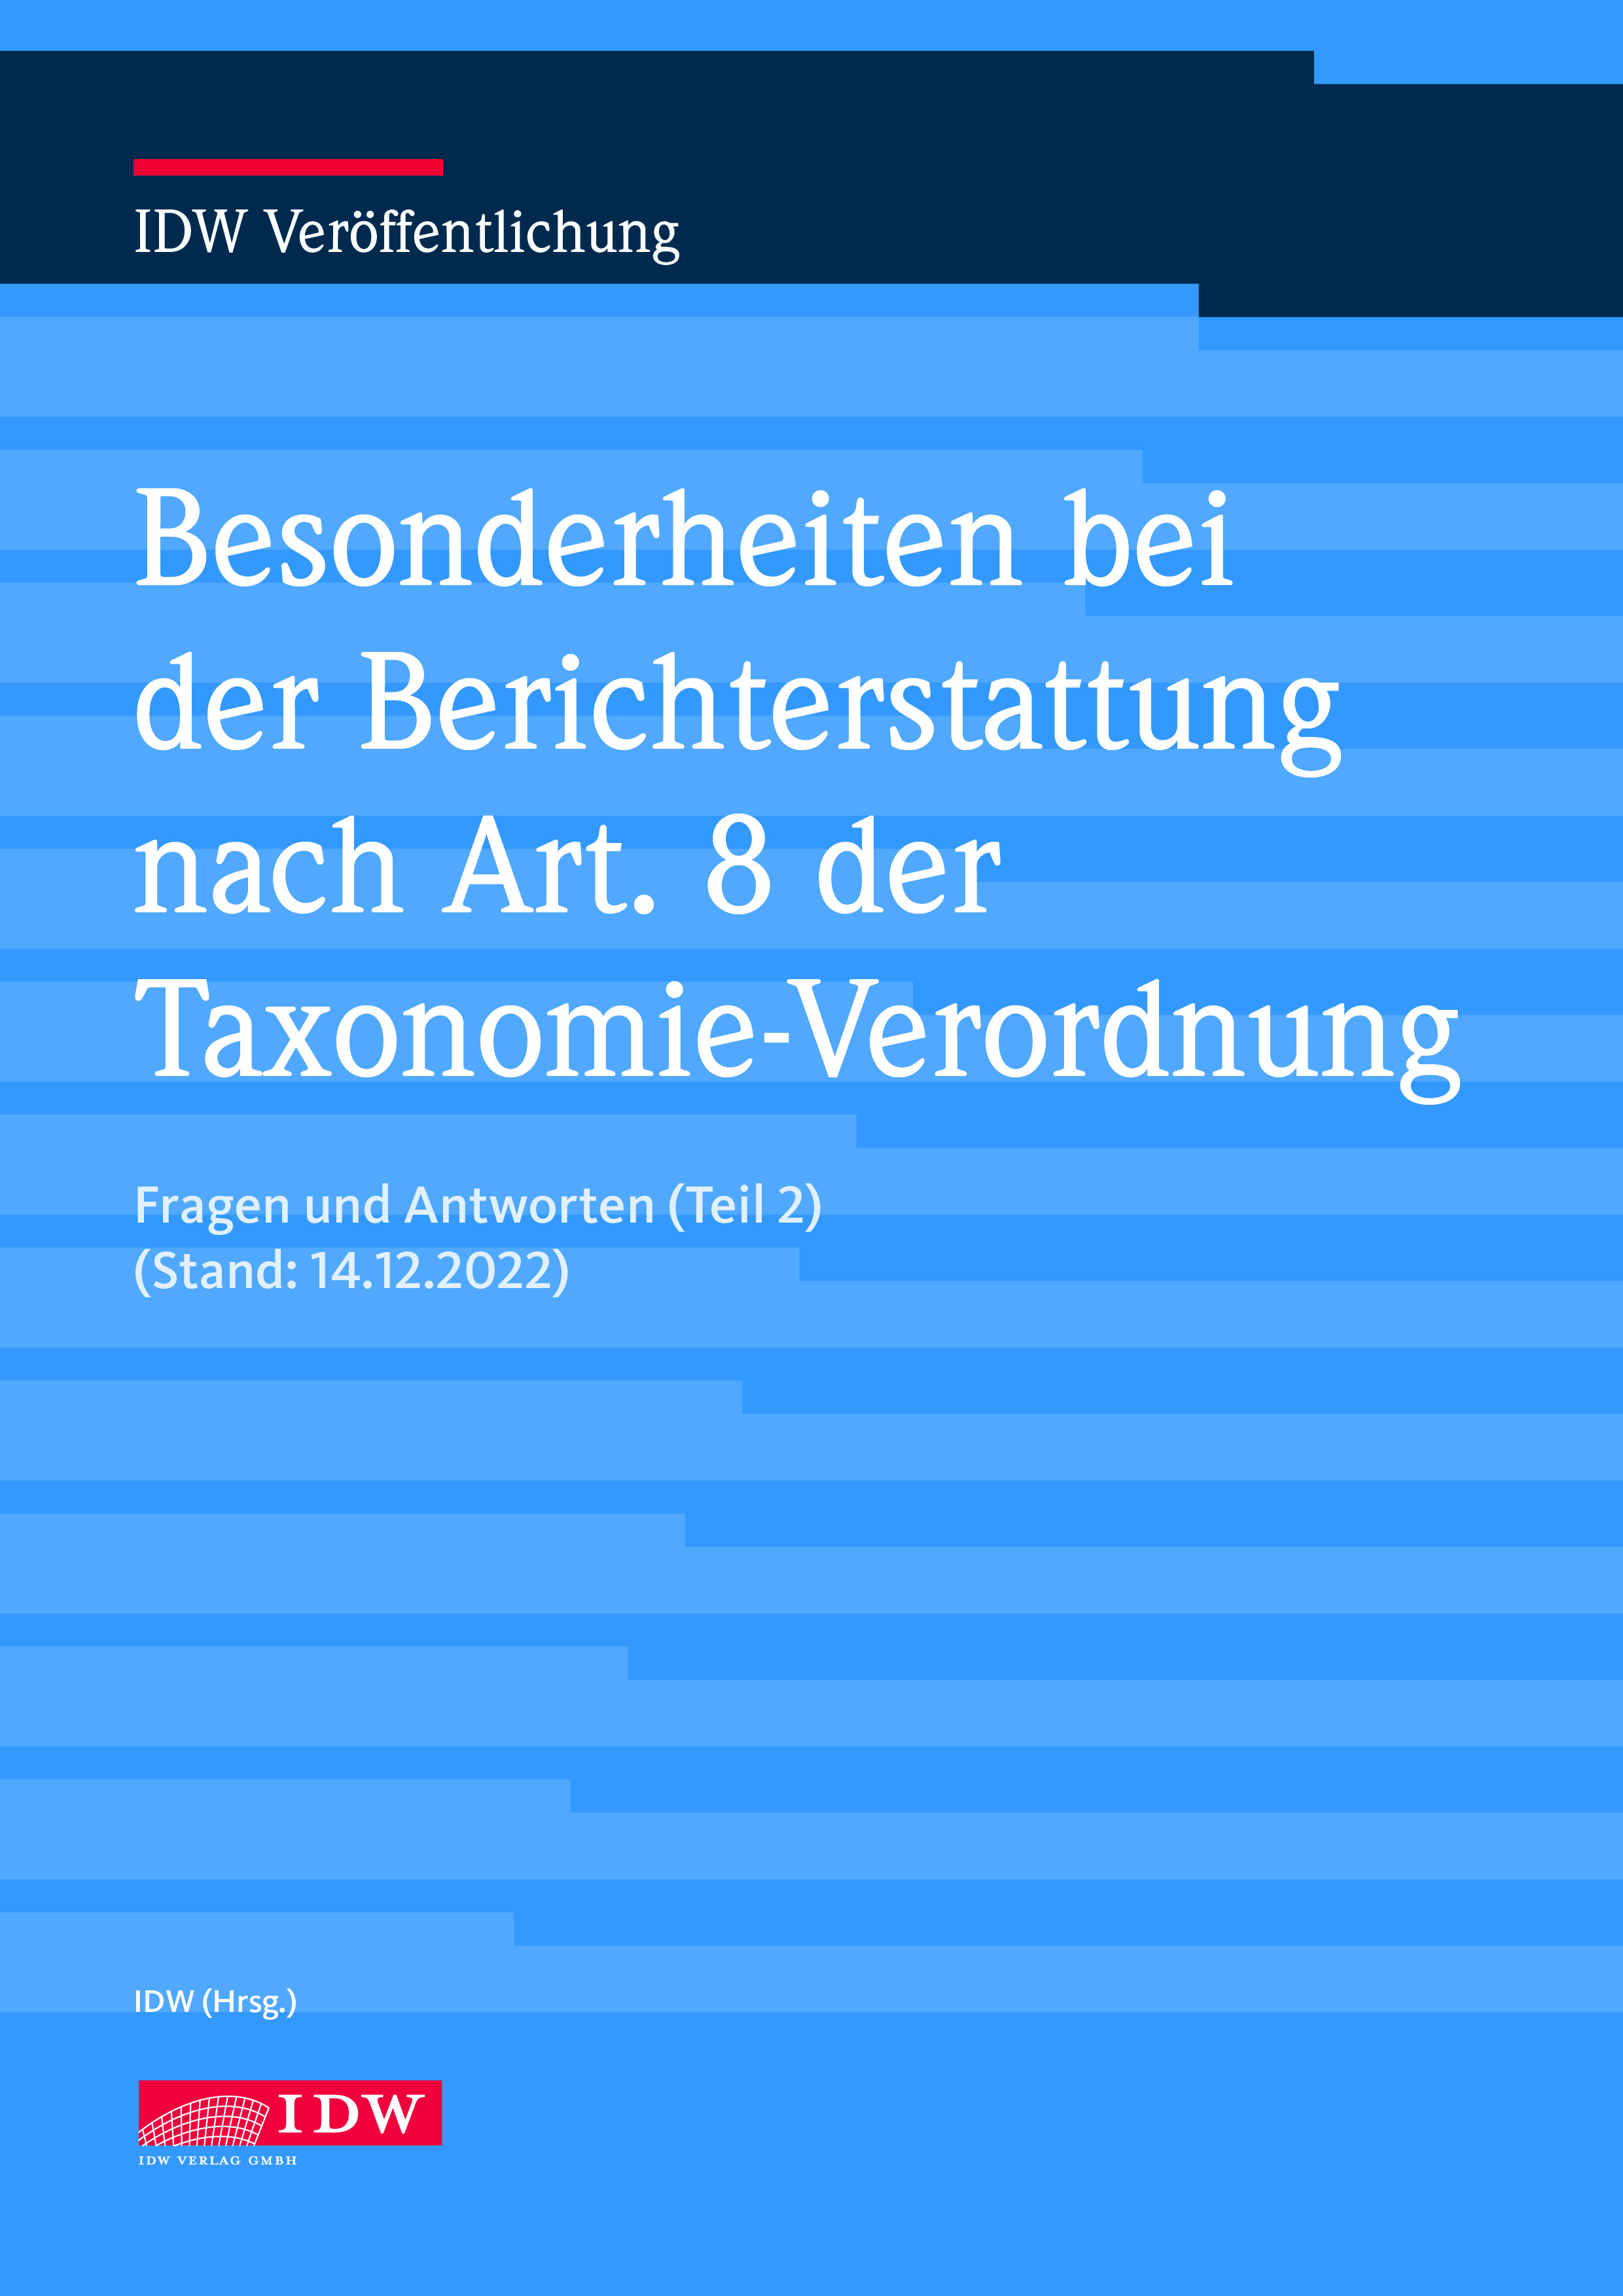 Q&A Besonderheiten bei der Berichterstattung nach Art. 8 der Taxonomie-Verordnung (Teil 2)